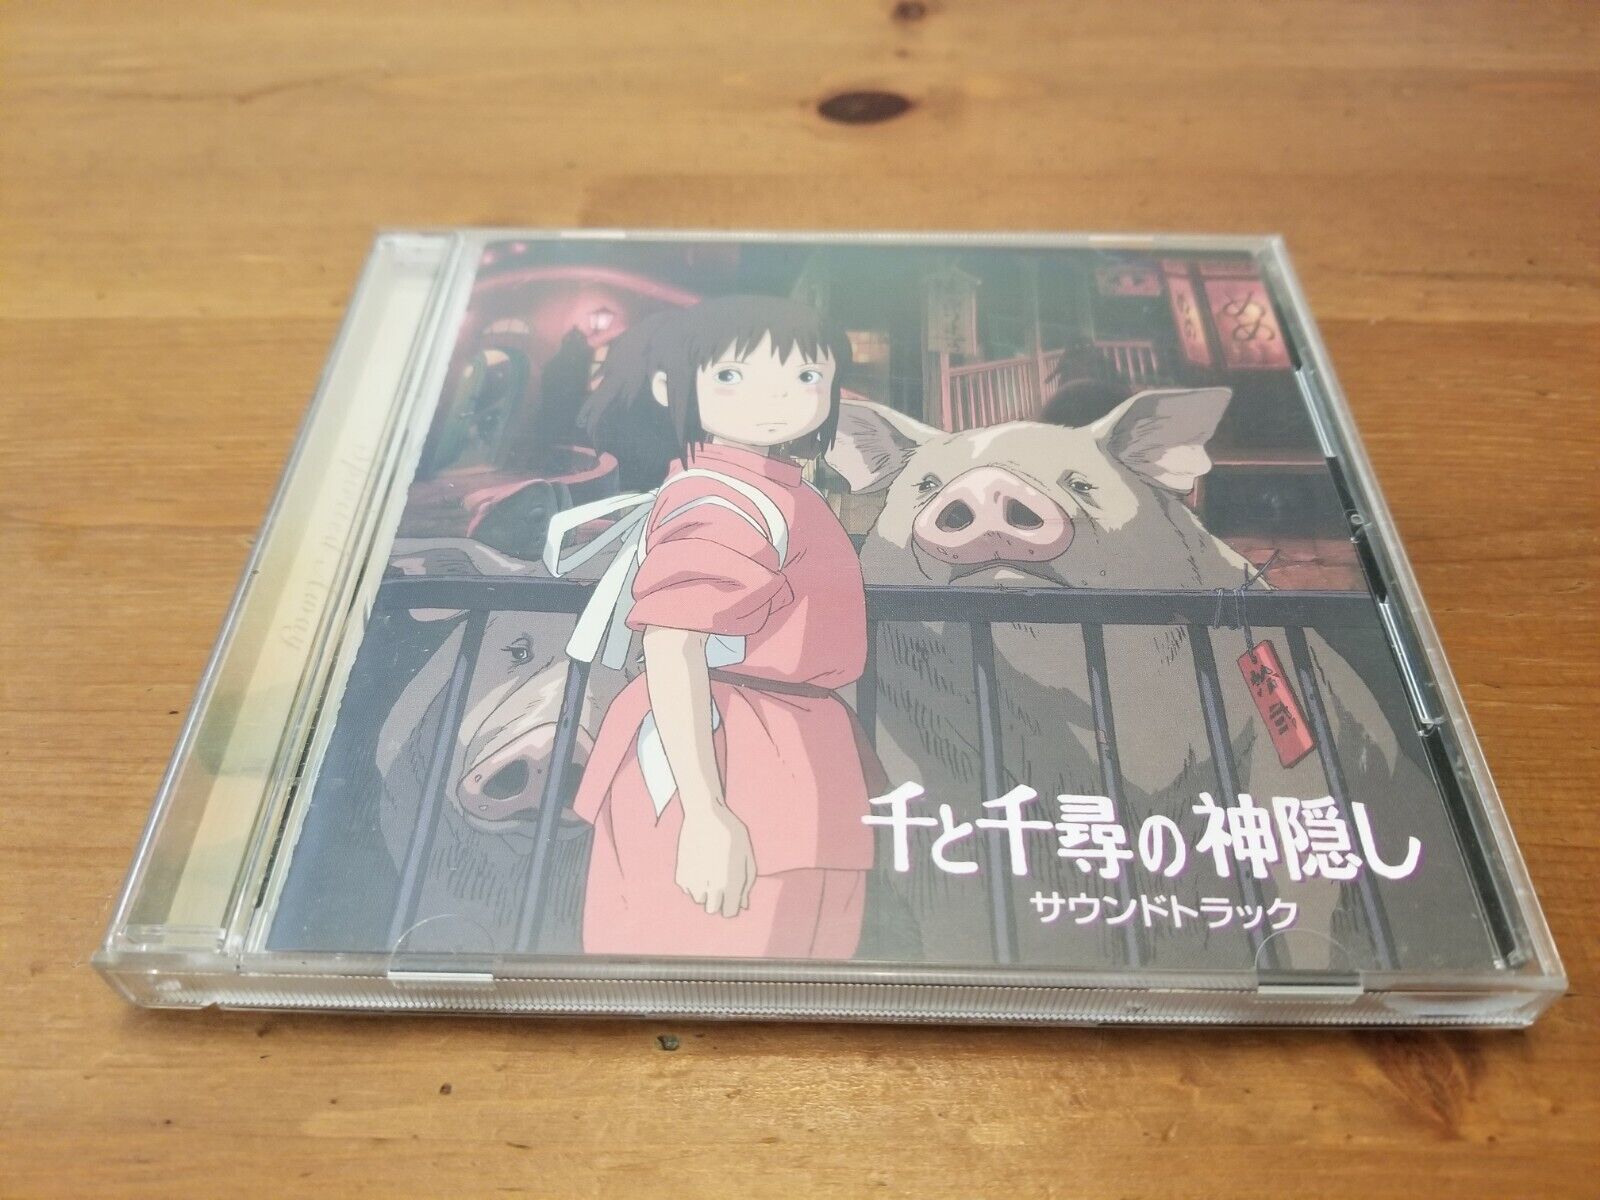 ANIME Movie SOUNDTRACK CD Studio Ghibli   Spirited Away Sento Chihiro 1991